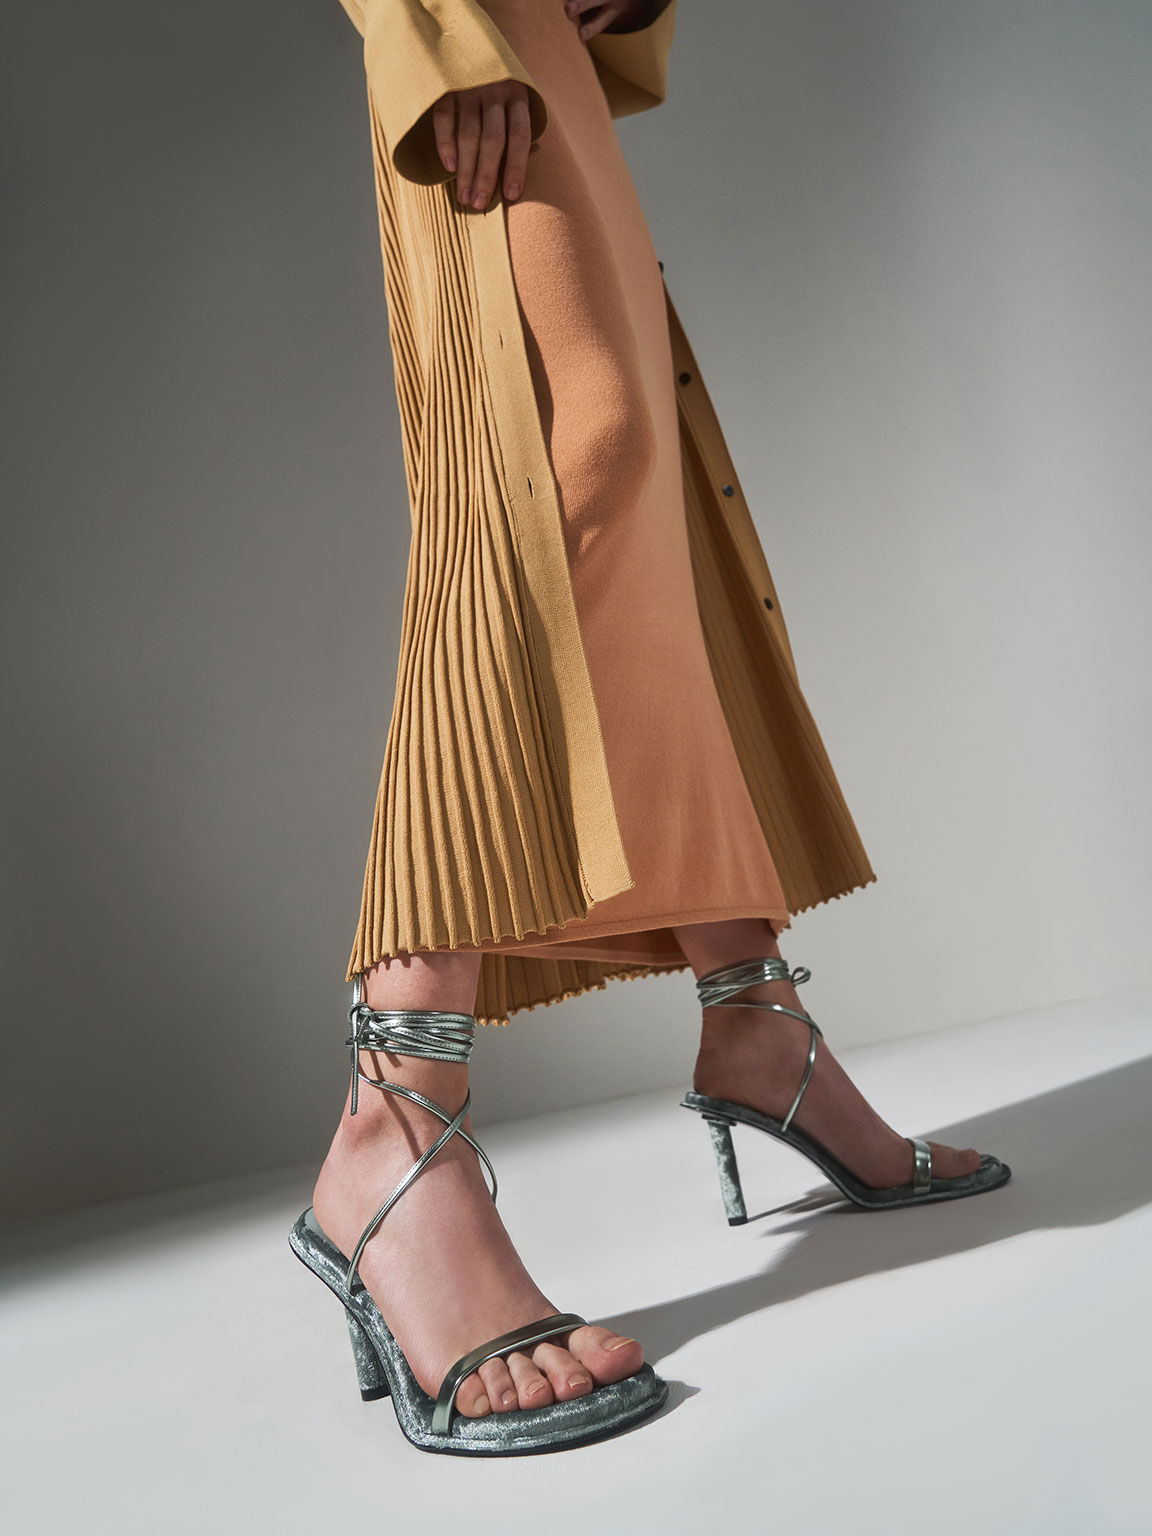 Holiday 2021 Collection: Kiera Metallic Tie-Around Stiletto Sandals, Sage Green, hi-res